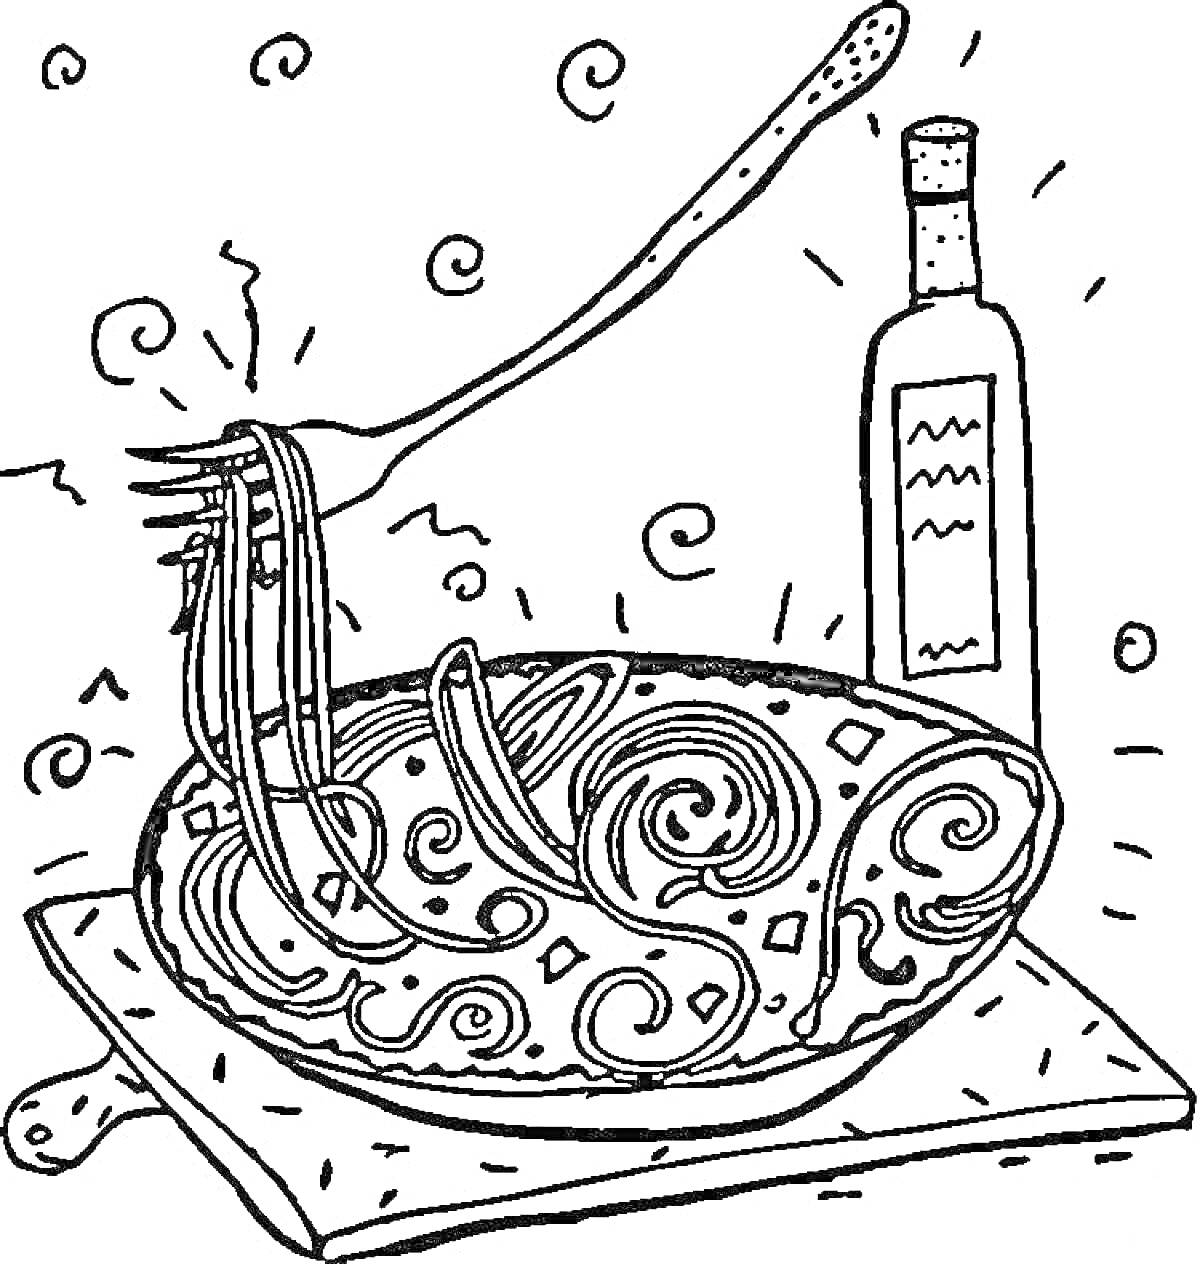 Тарелка с пастой и бутылка соуса на деревянной доске, спагетти на вилке